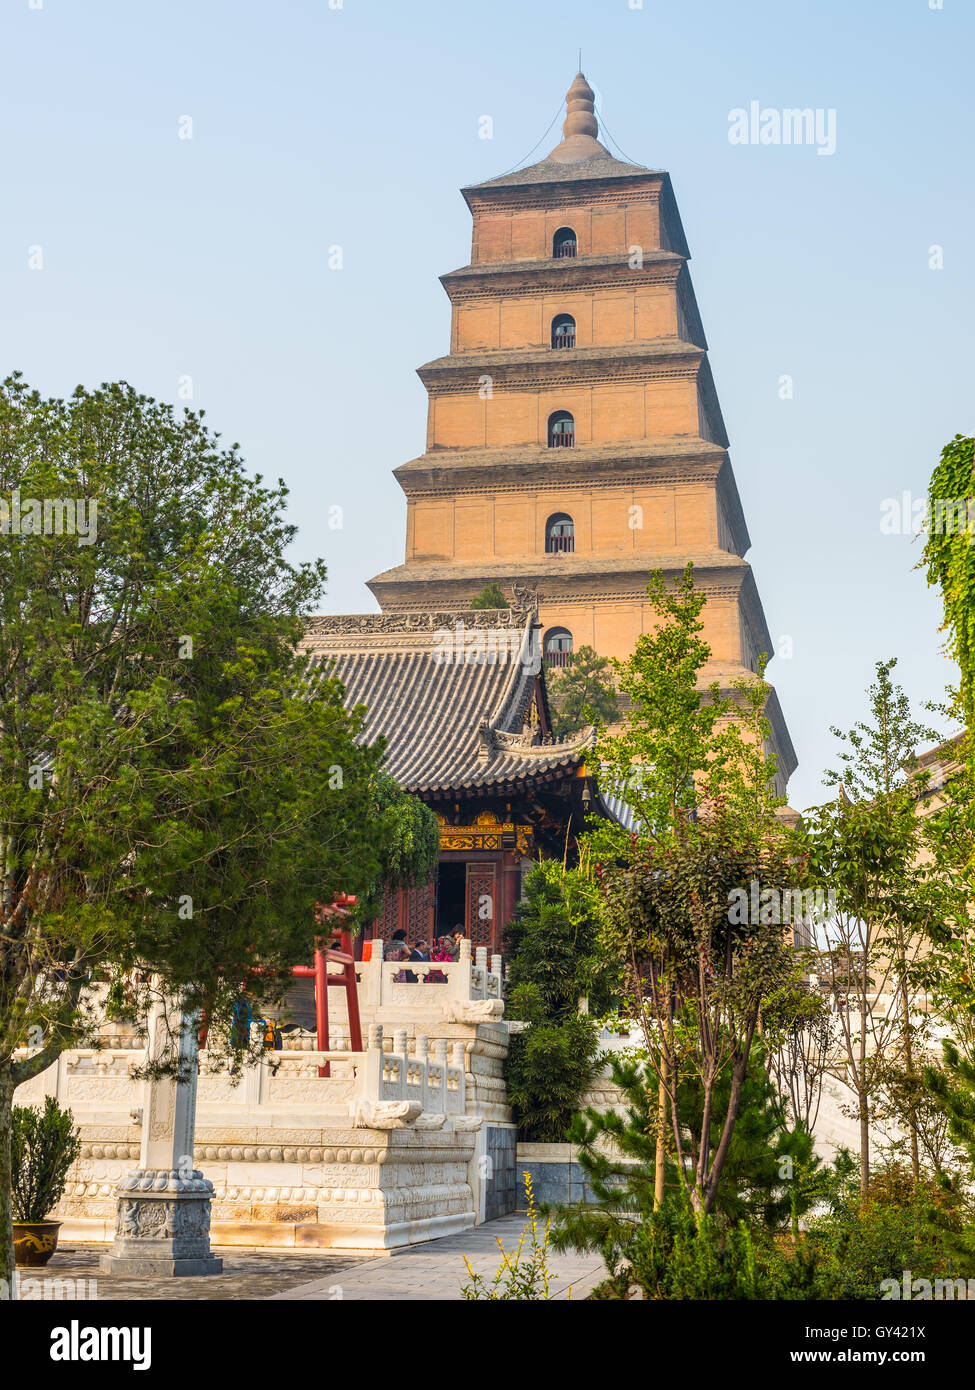 Giant Wild Goose Pagoda ou la Grande Pagode de l'Oie Sauvage, est une pagode bouddhiste de Xi'an, province du Shaanxi Banque D'Images